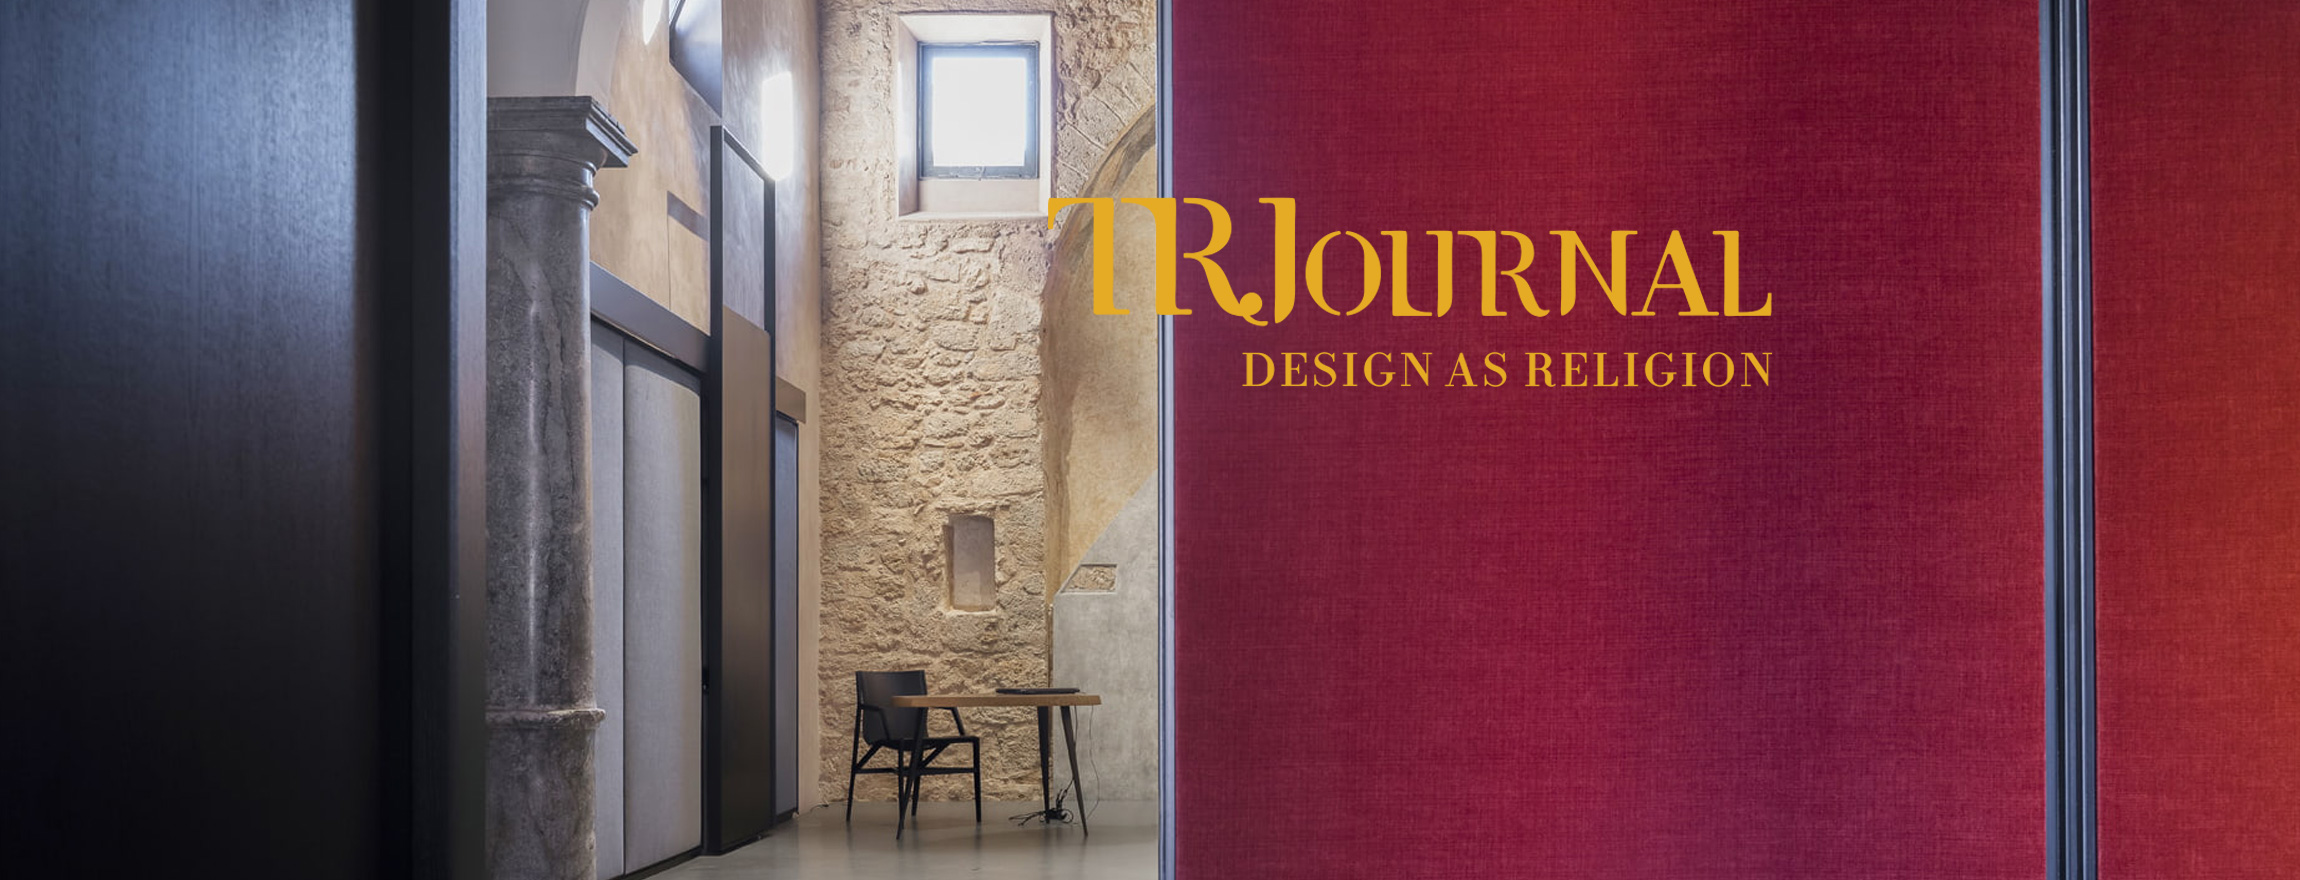 Design-As-Religion - TRJ per l'Architettura